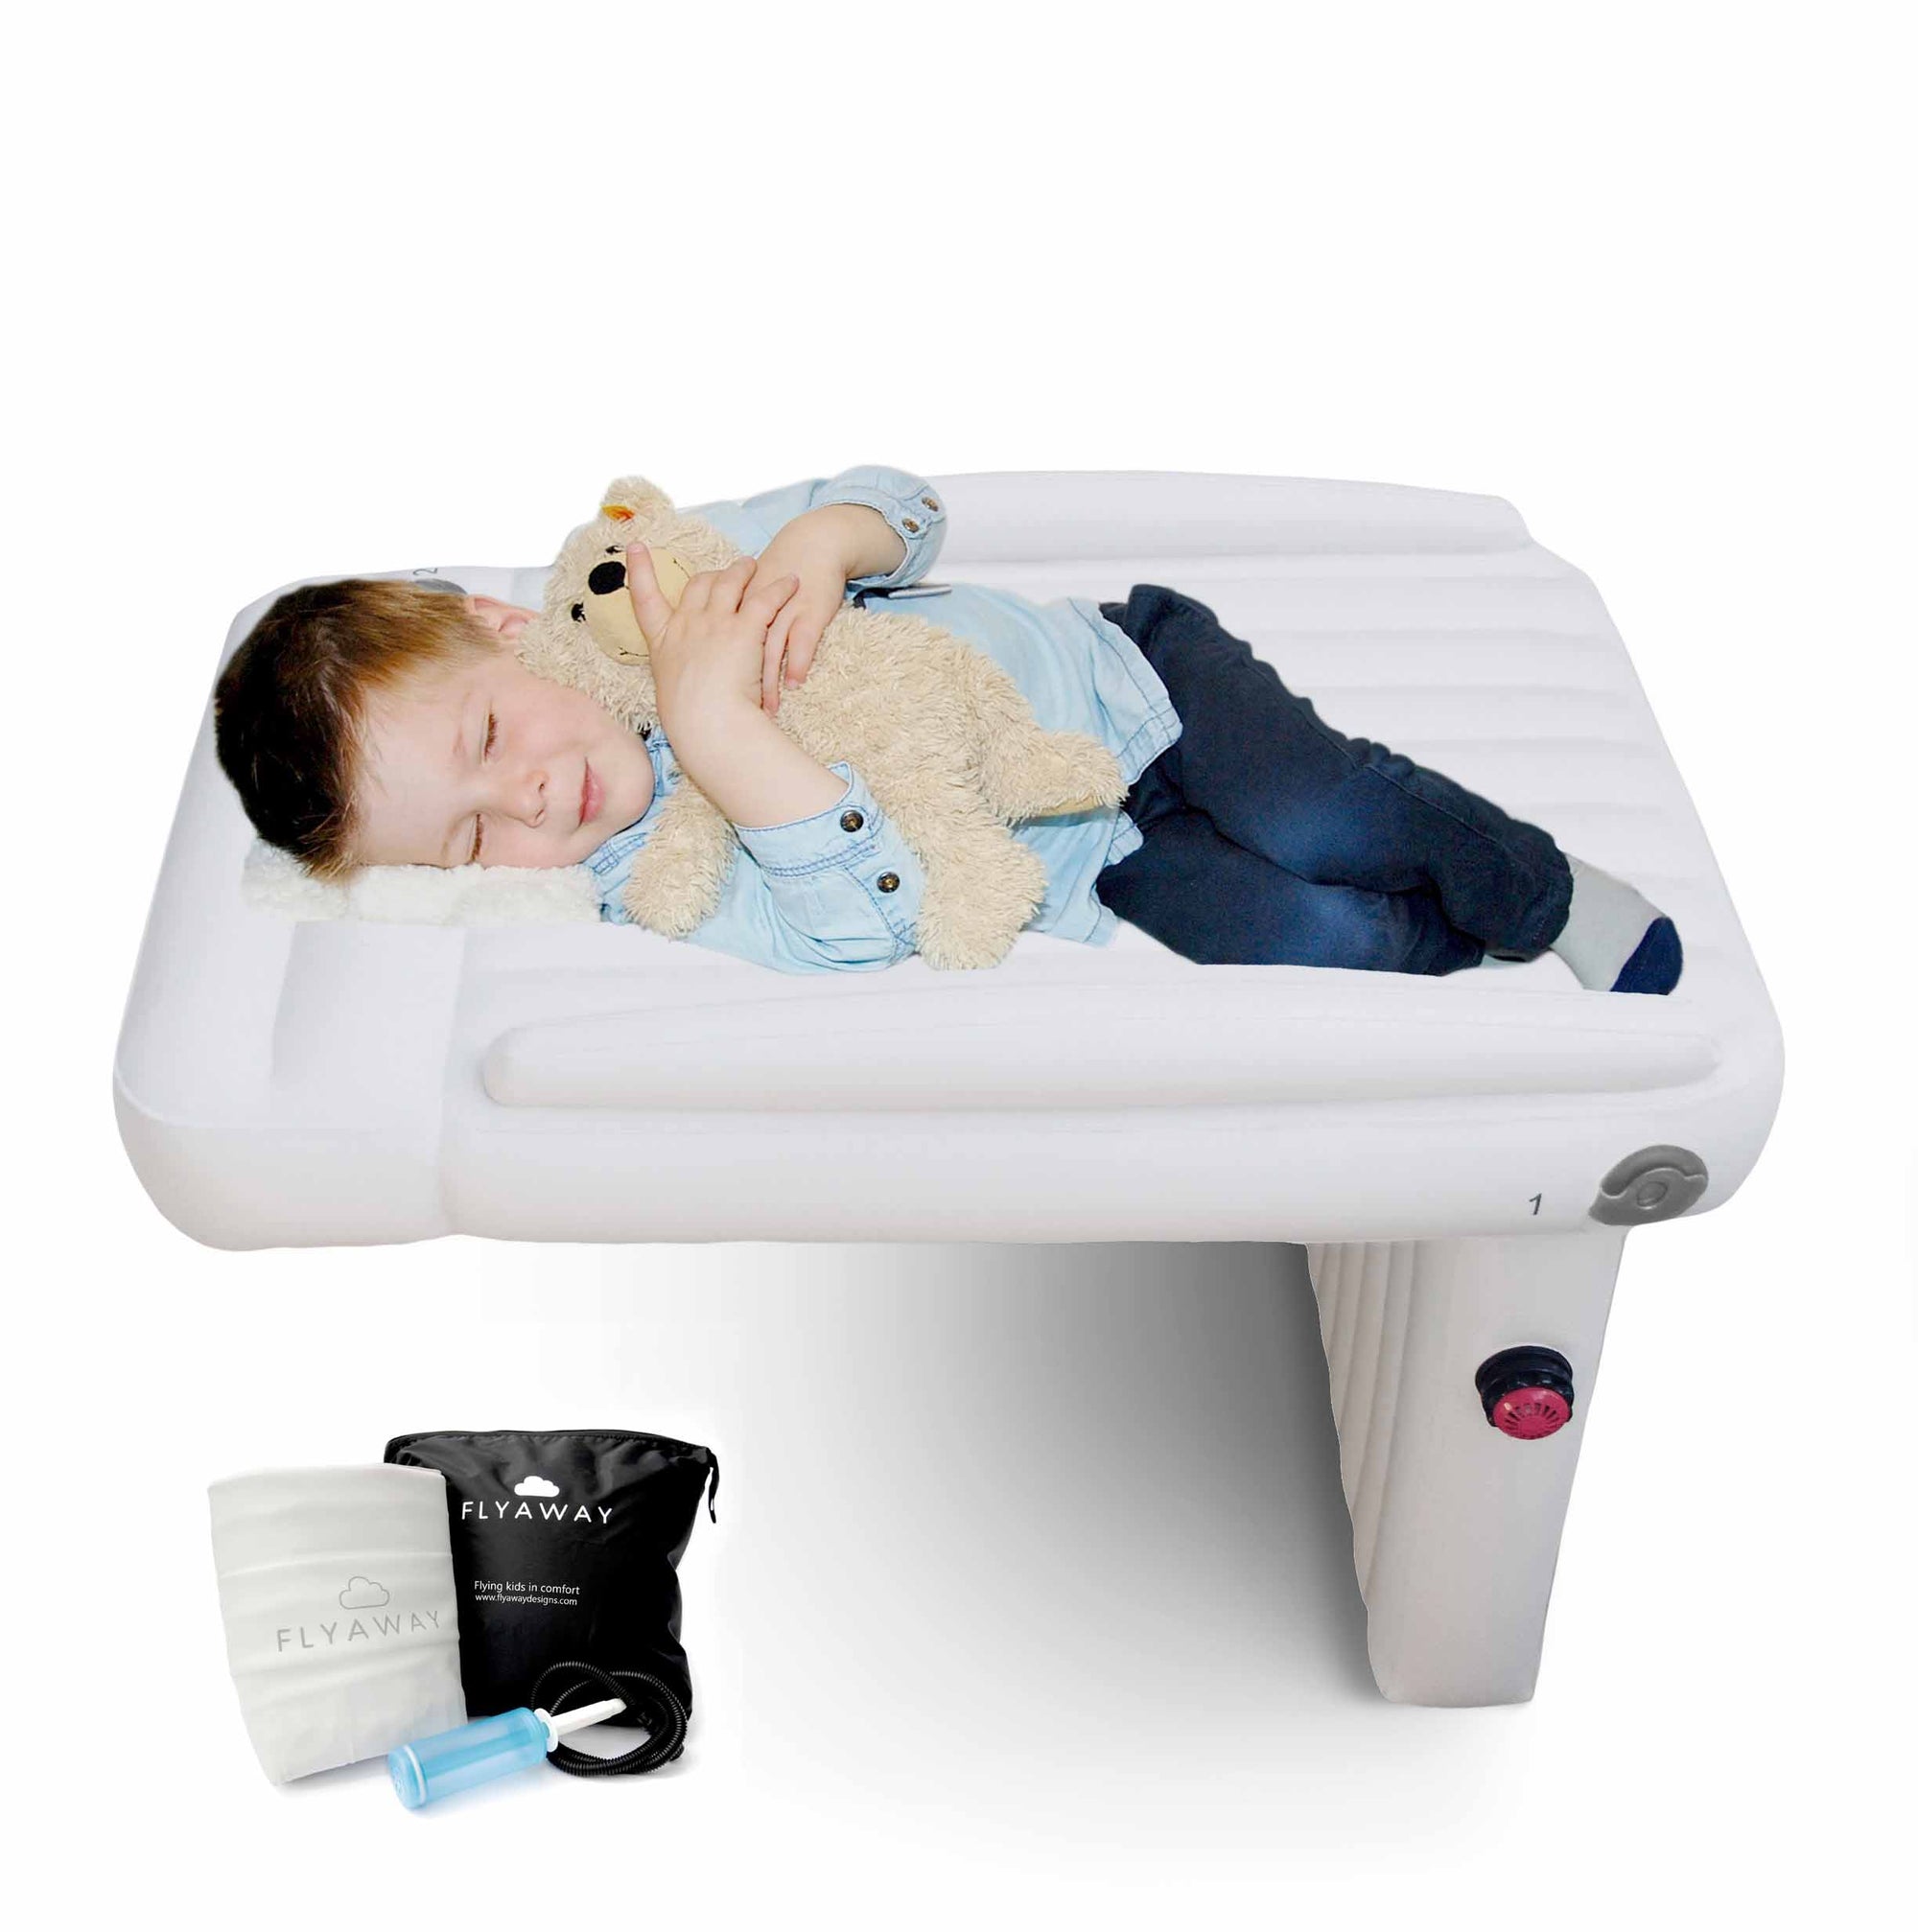 Gedrag Verloren hart Fahrenheit Flyaway Designs: Flyaway Kids Bed - Help your child sleep on flights!